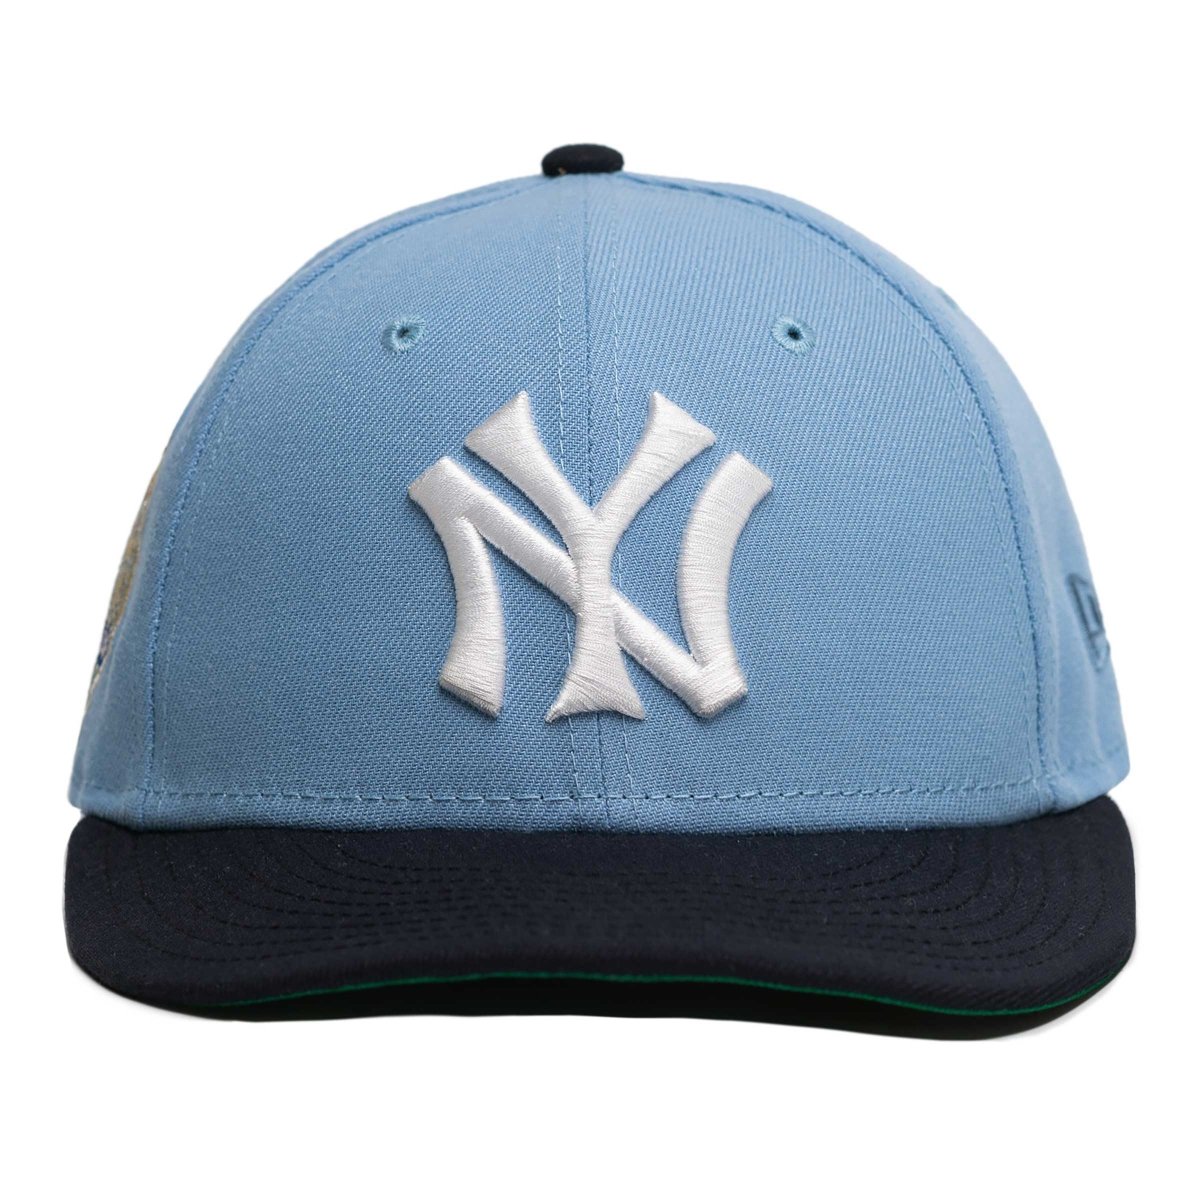 1927 yankees hat